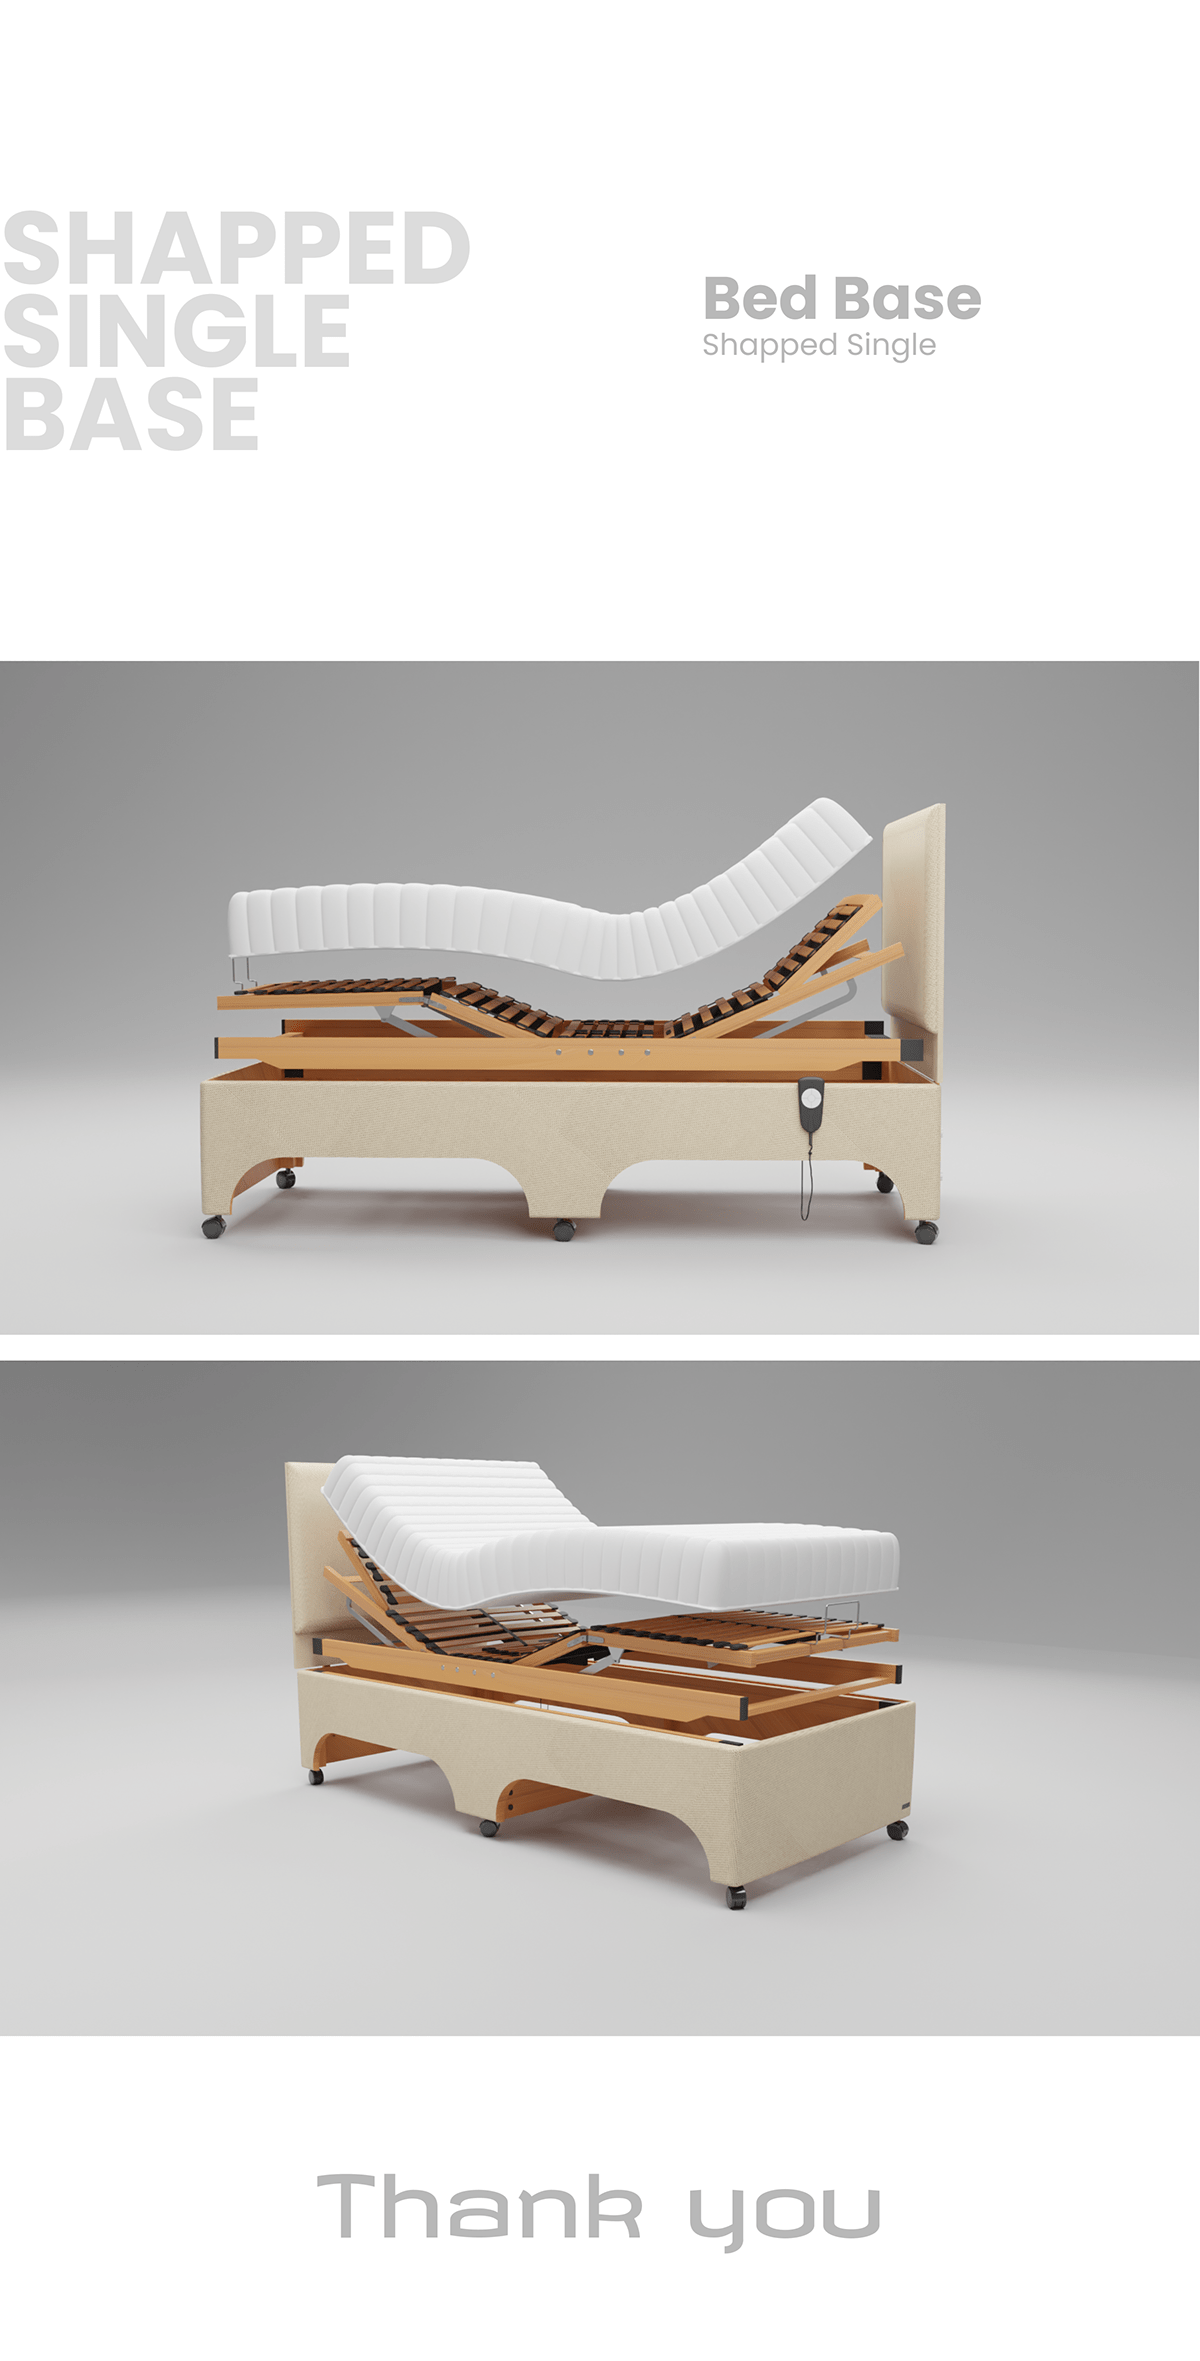 3D 3d modeling architecture blender furniture furniture design  modern product product design  Render